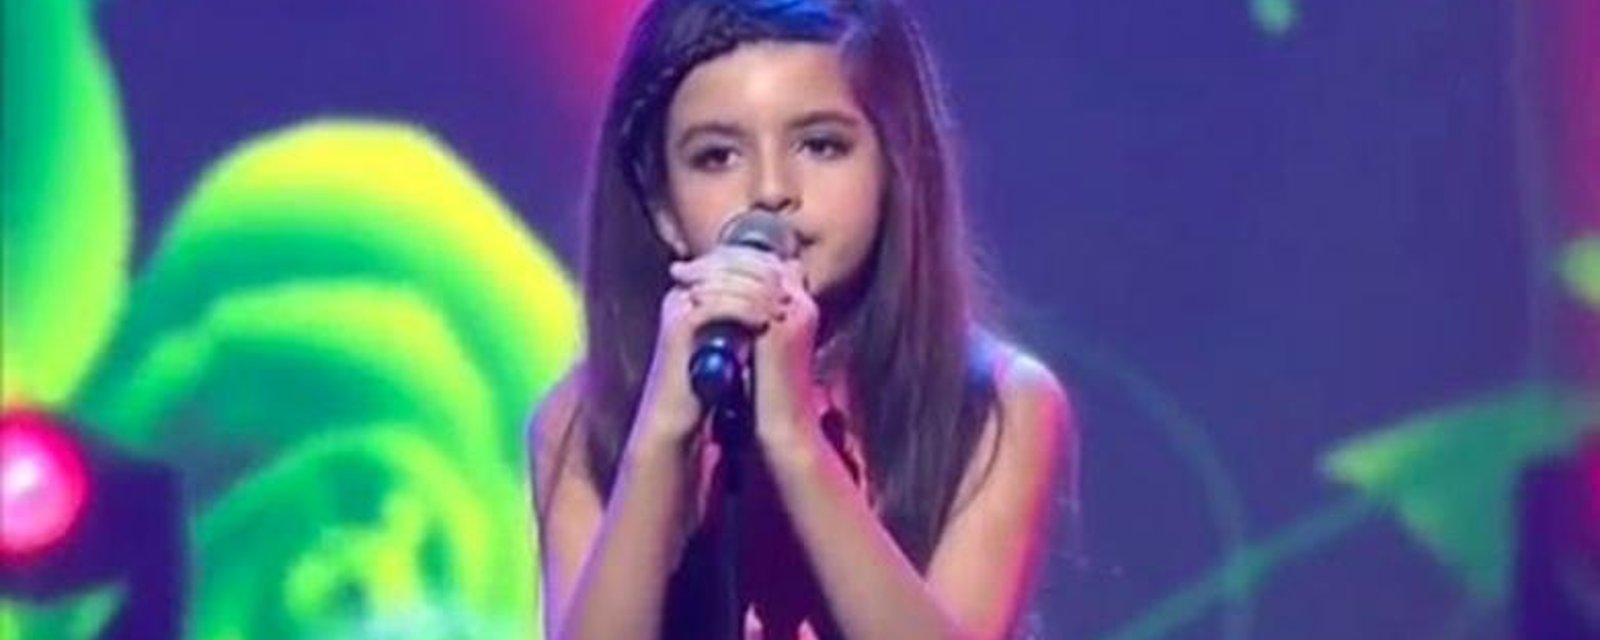 Elle n'a que 9 ans, mais lorsqu'elle commence à chanter, sa voix est sensationnelle!